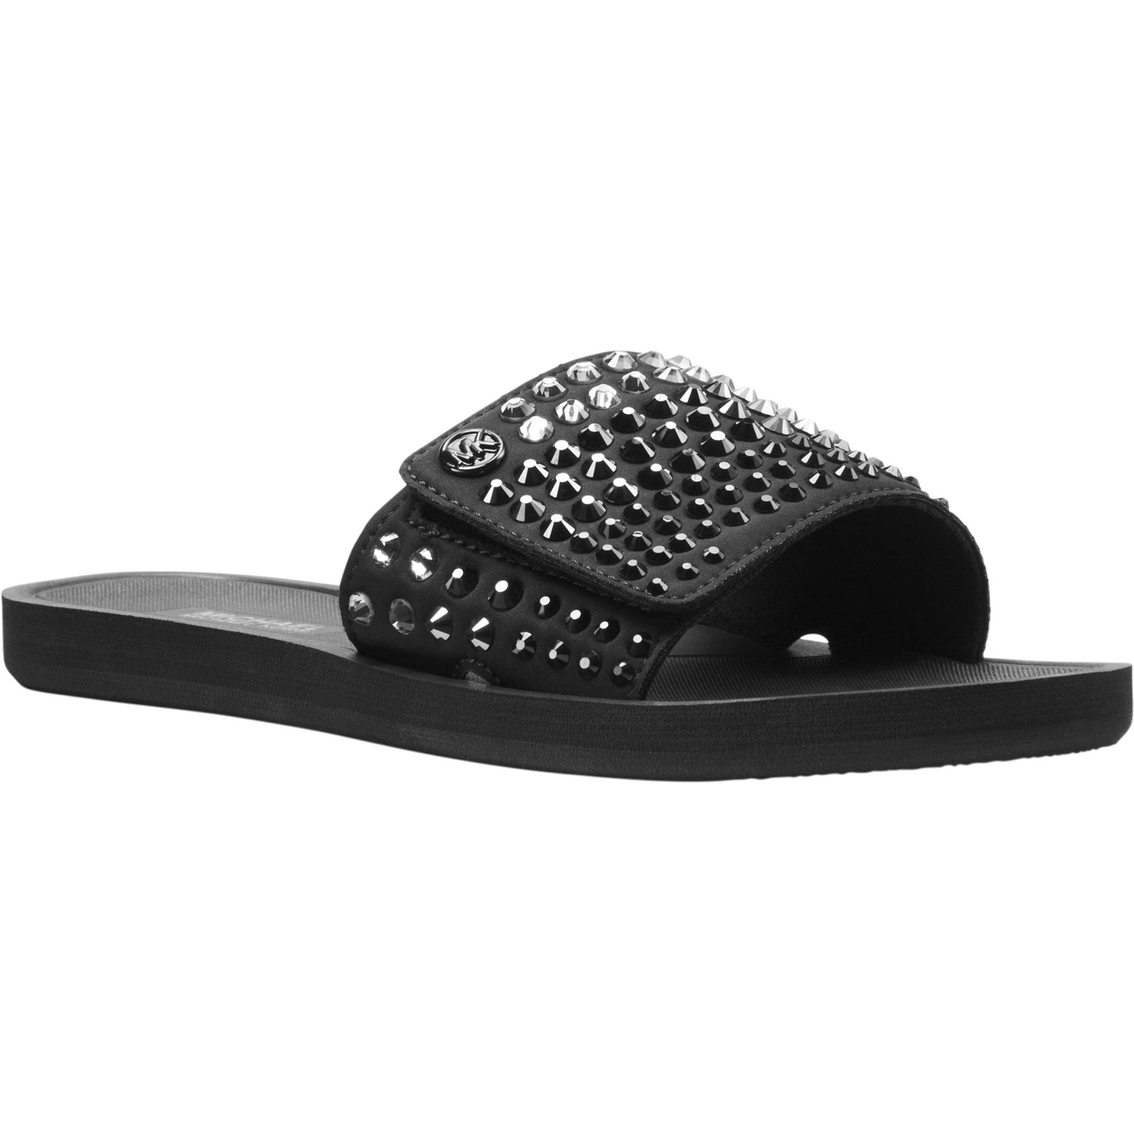 michael kors black slippers